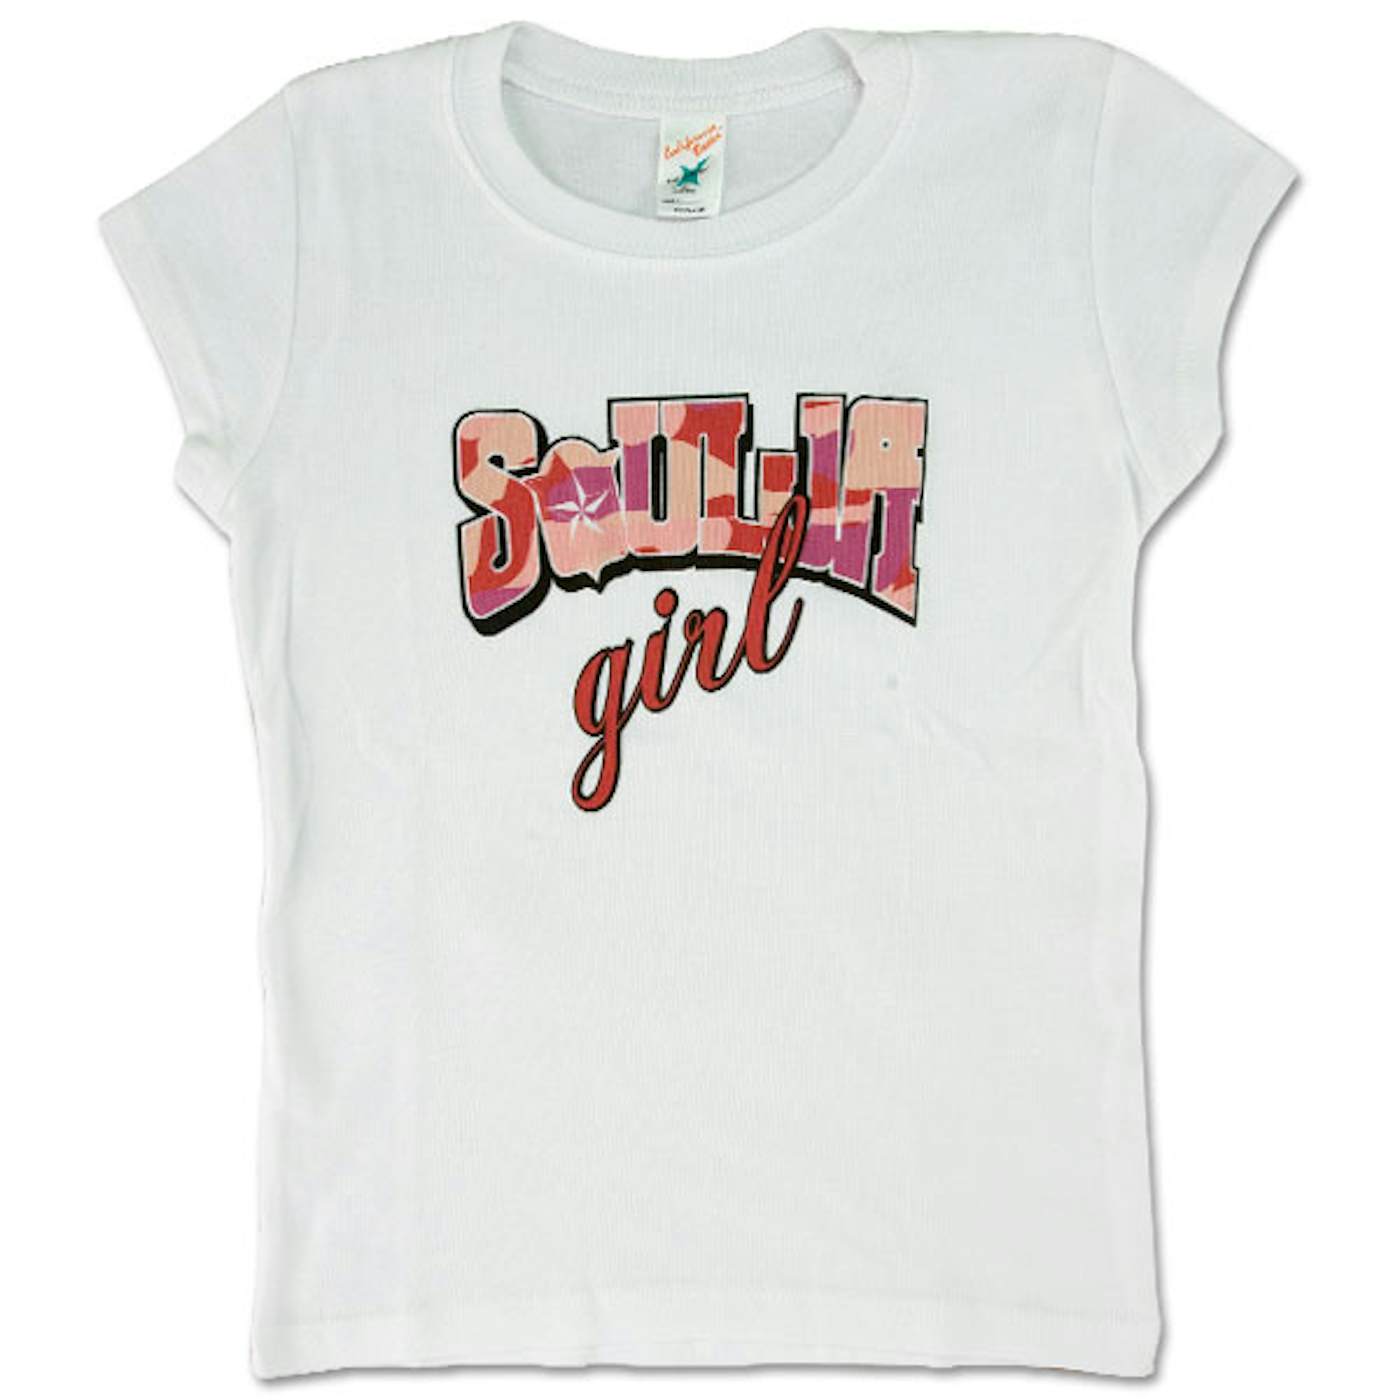 Soulja Boy Tell 'Em "Girl" T-Shirt